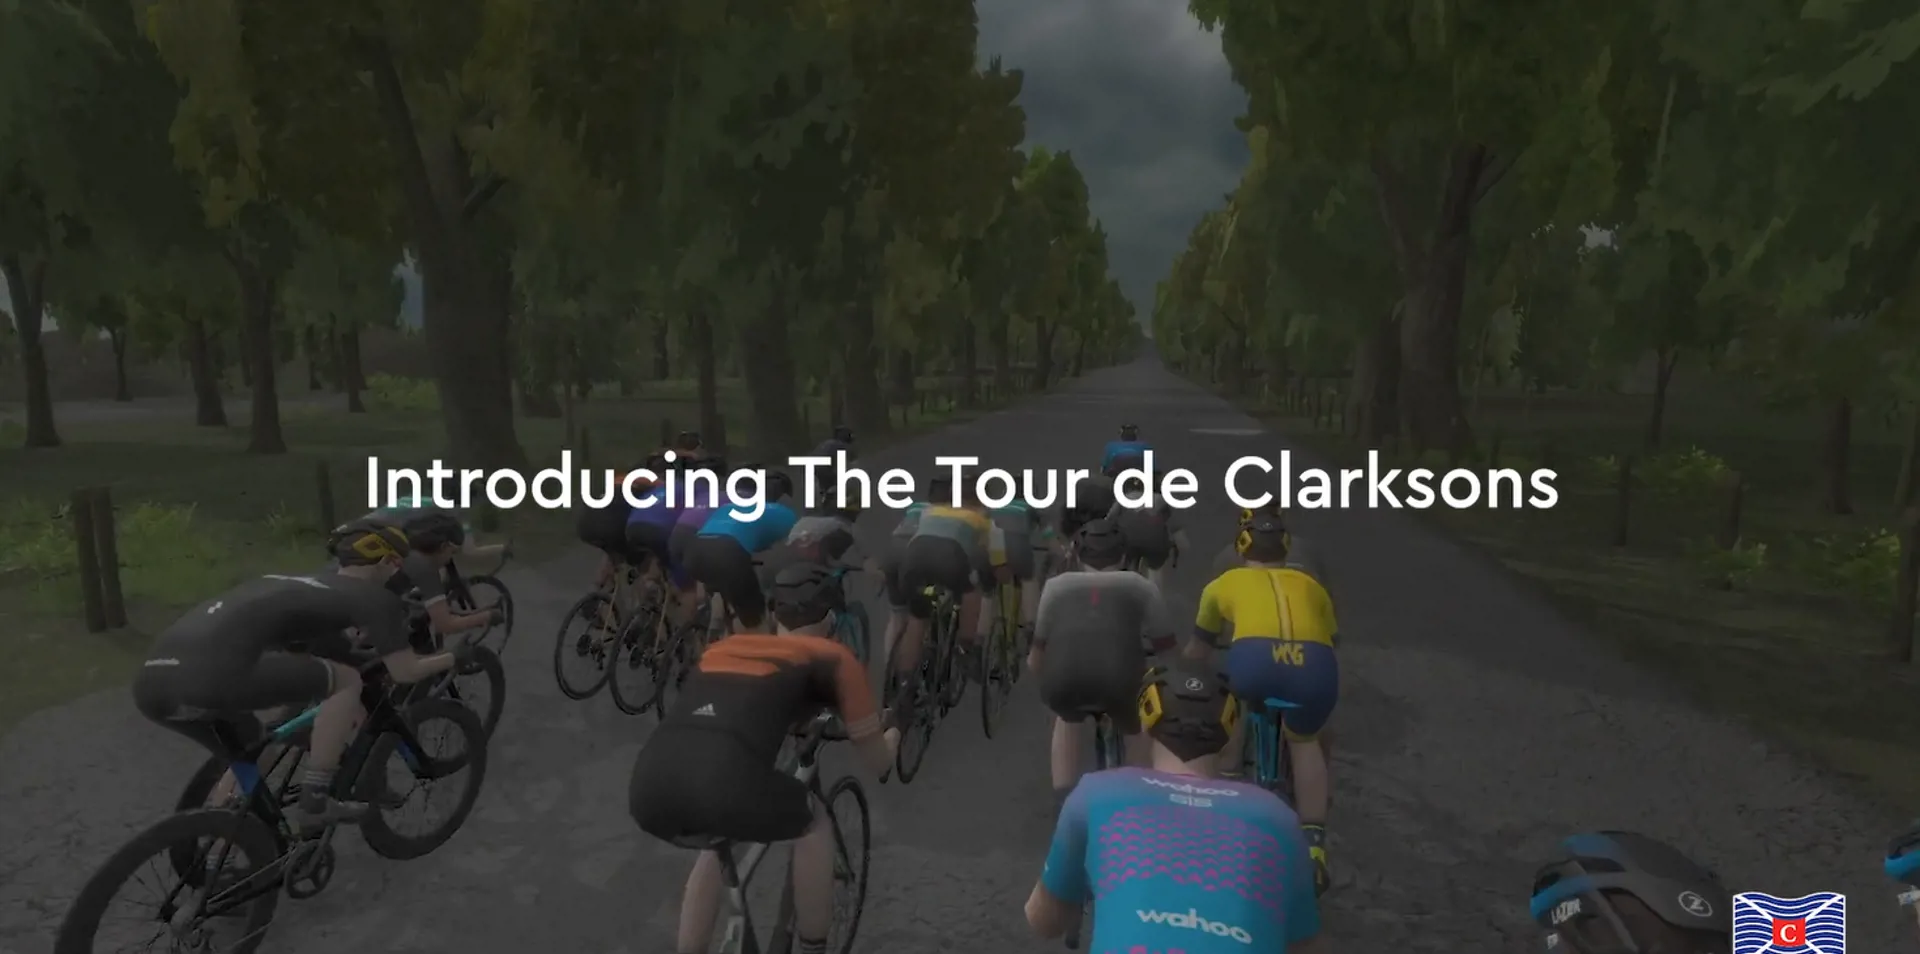 Tour de Clarksons video